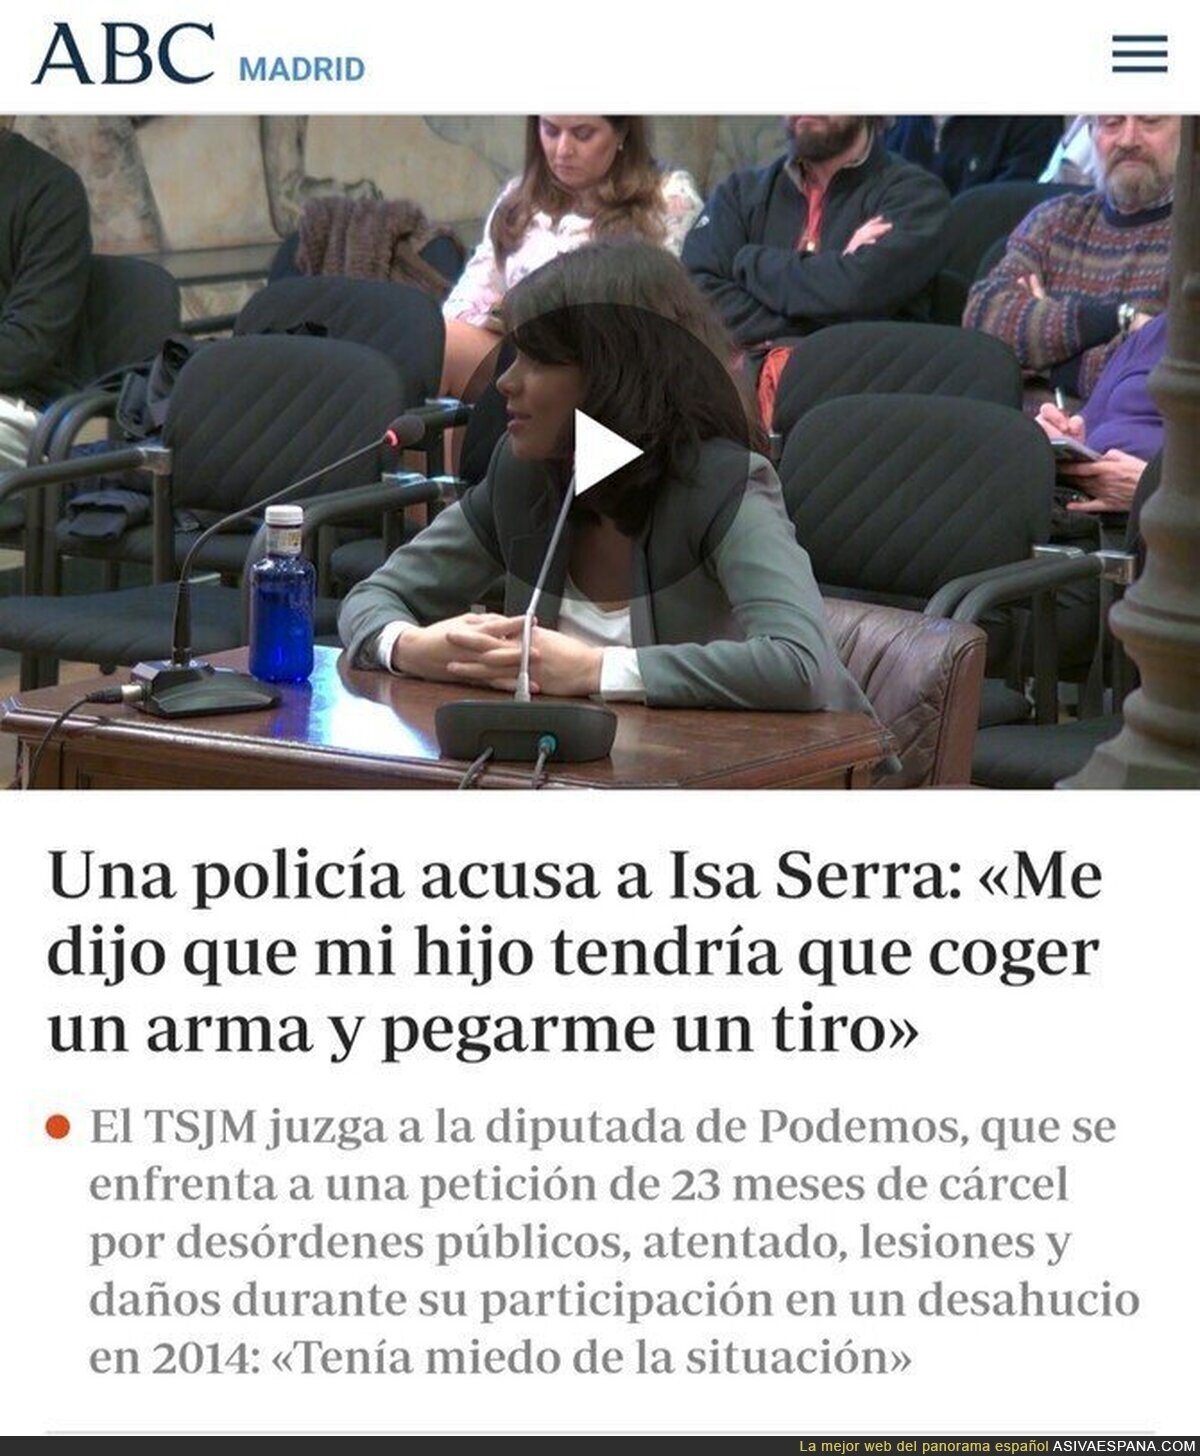 Isa Serra y su supuesto respeto por la policía